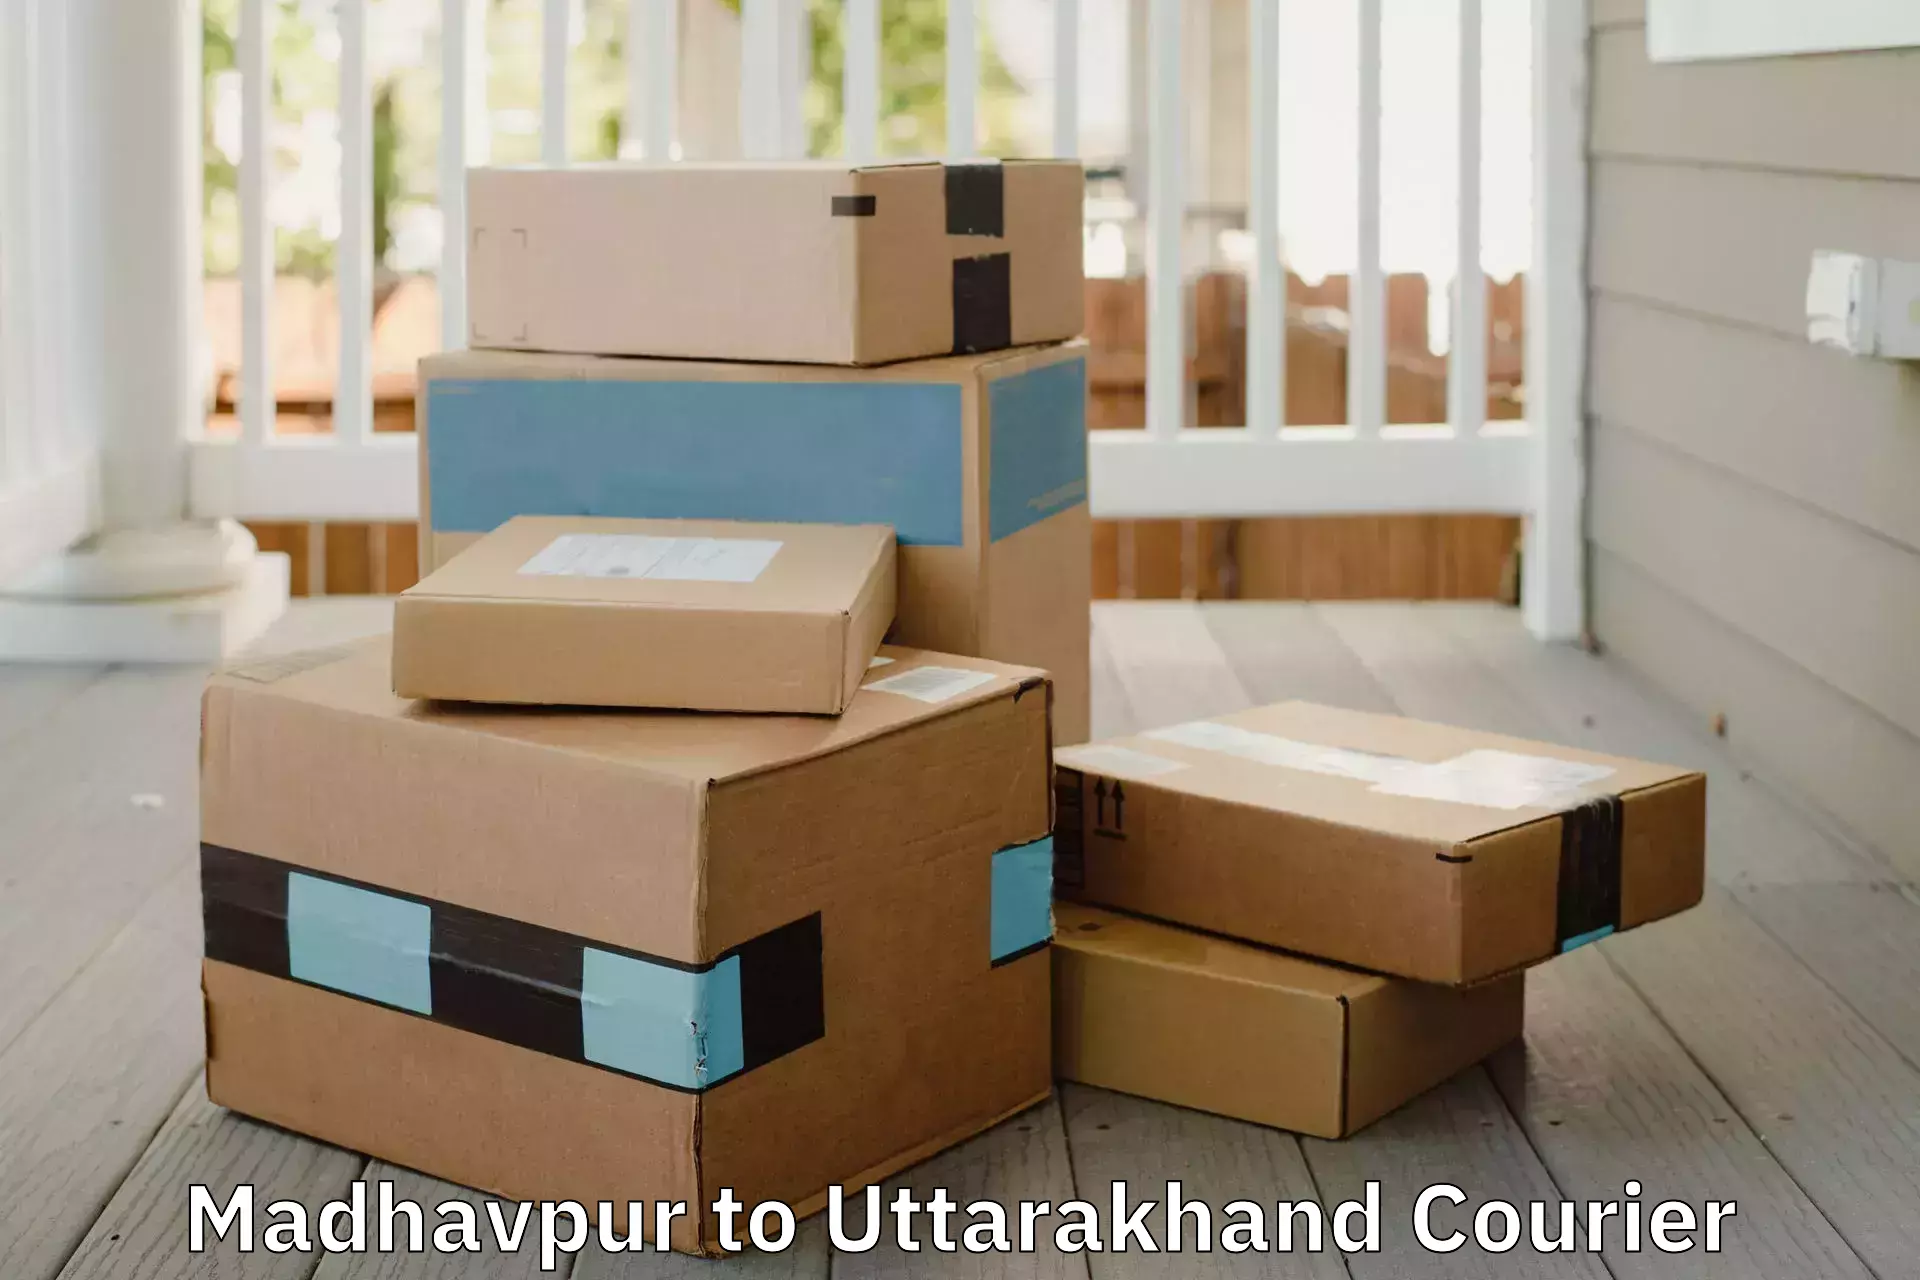 Furniture moving service in Madhavpur to Kotdwara